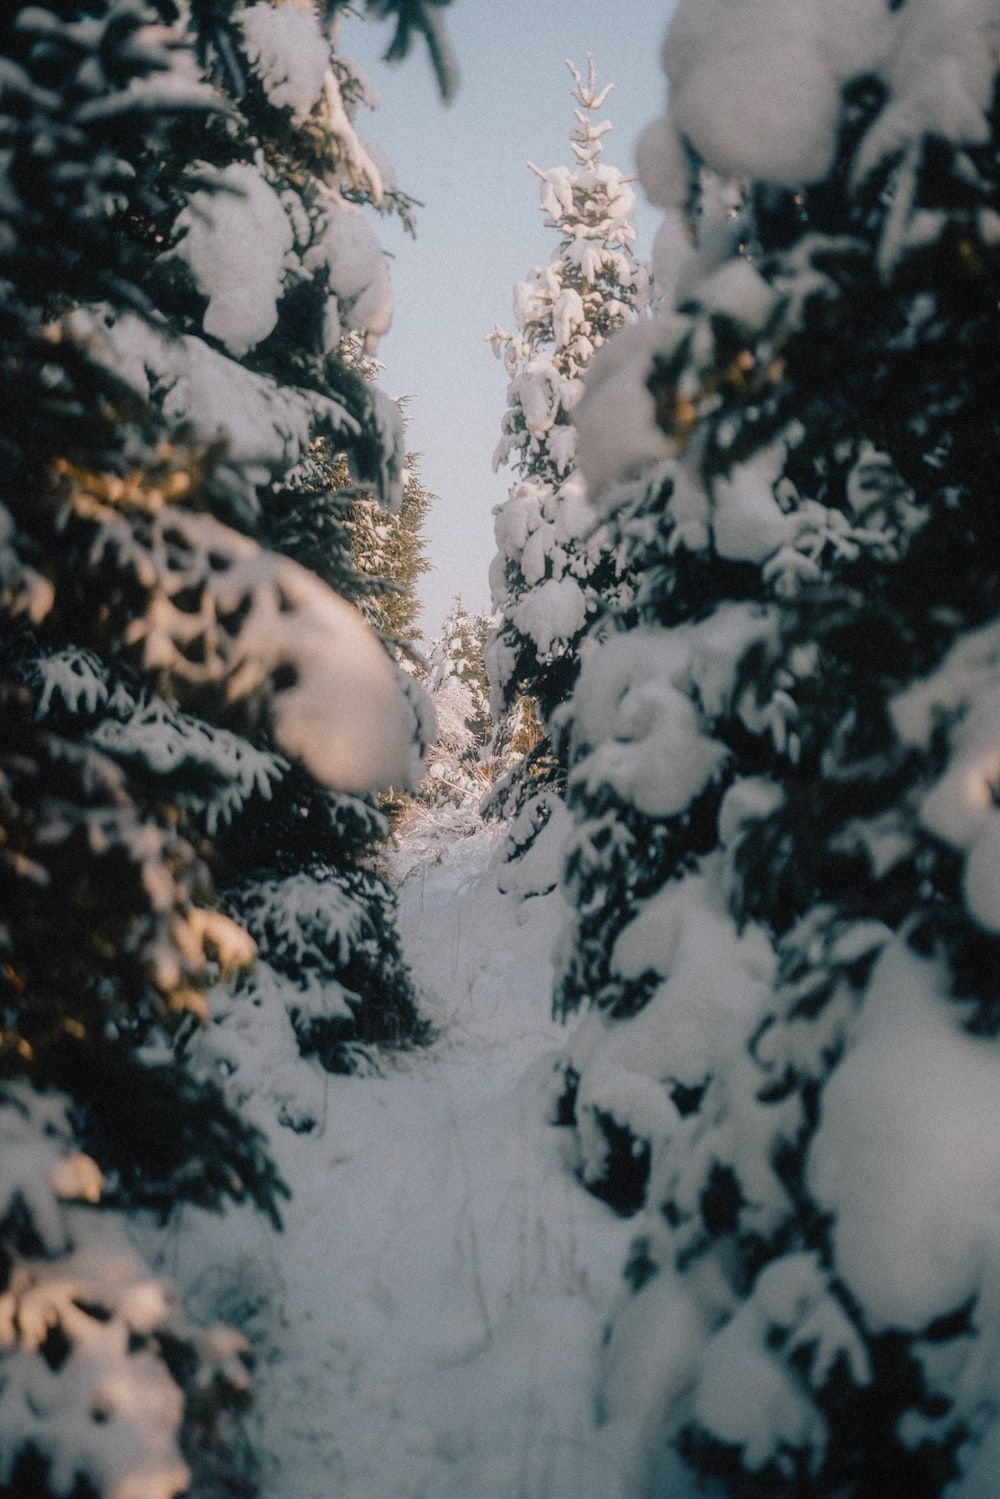  Schnee Hintergrundbild 1000x1499. Foto zum Thema Ein schneebedeckter Weg zwischen zwei immergrünen Bäumen